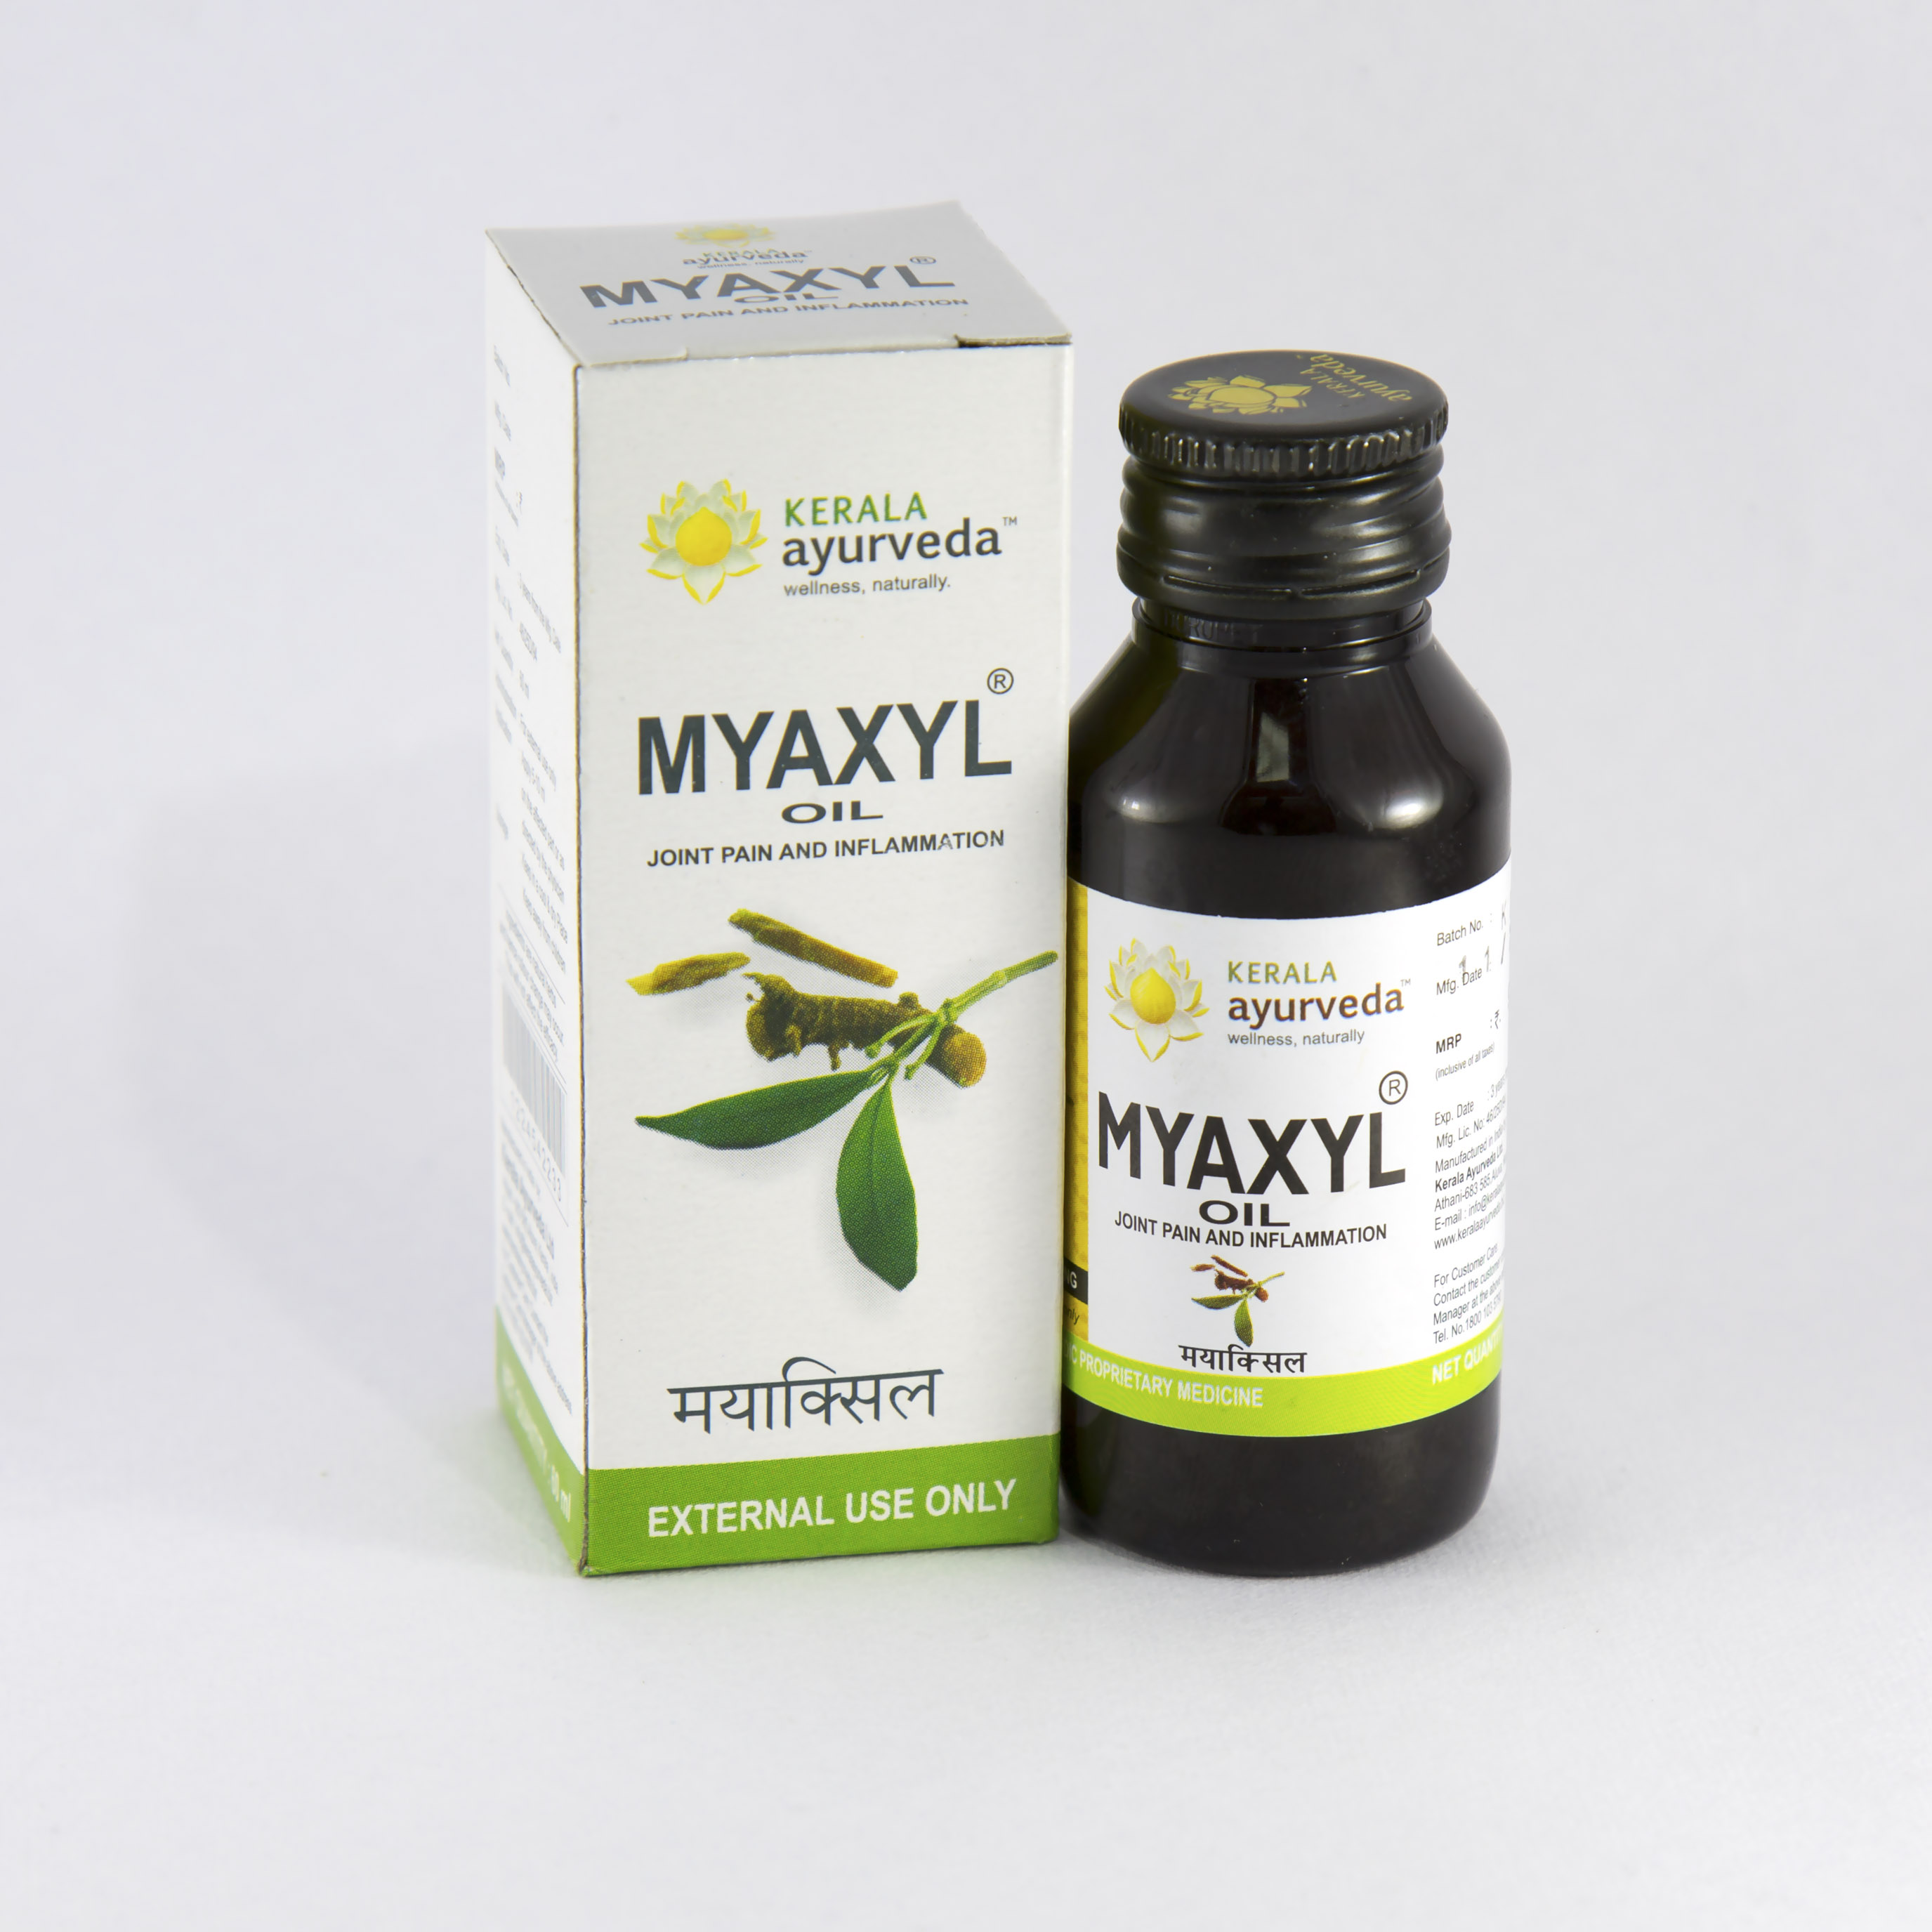 Buy Kerala Ayurveda Myaxyl Oil at Best Price Online